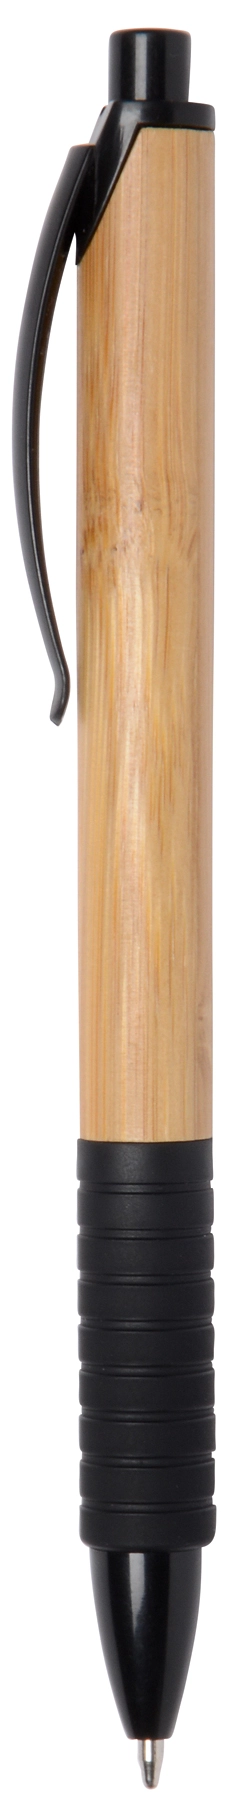 Długopis BAMBOO RUBBER, brązowy, czarny 56-1101538 brązowy